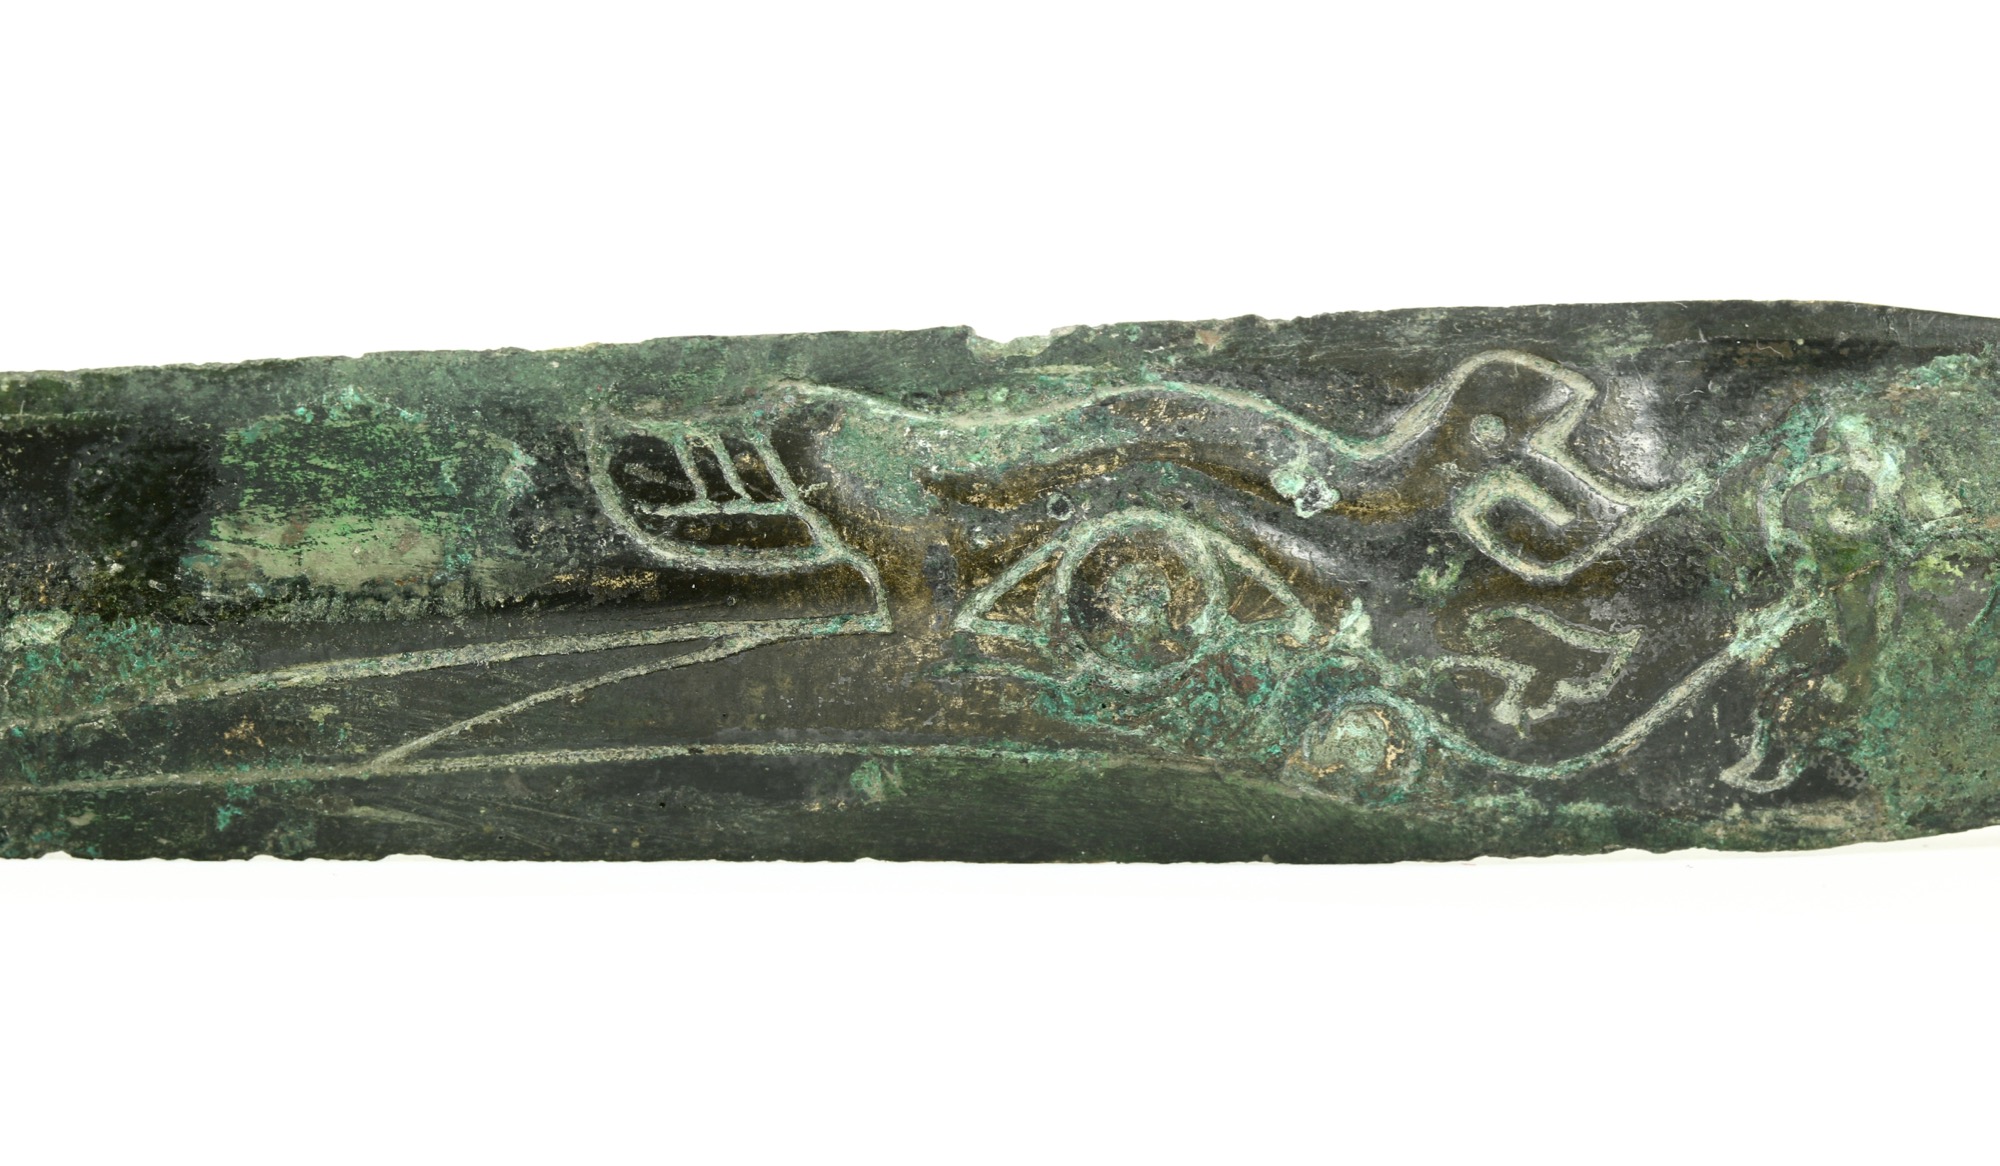 An ancient bronze dagger from the Ba-Shu culture